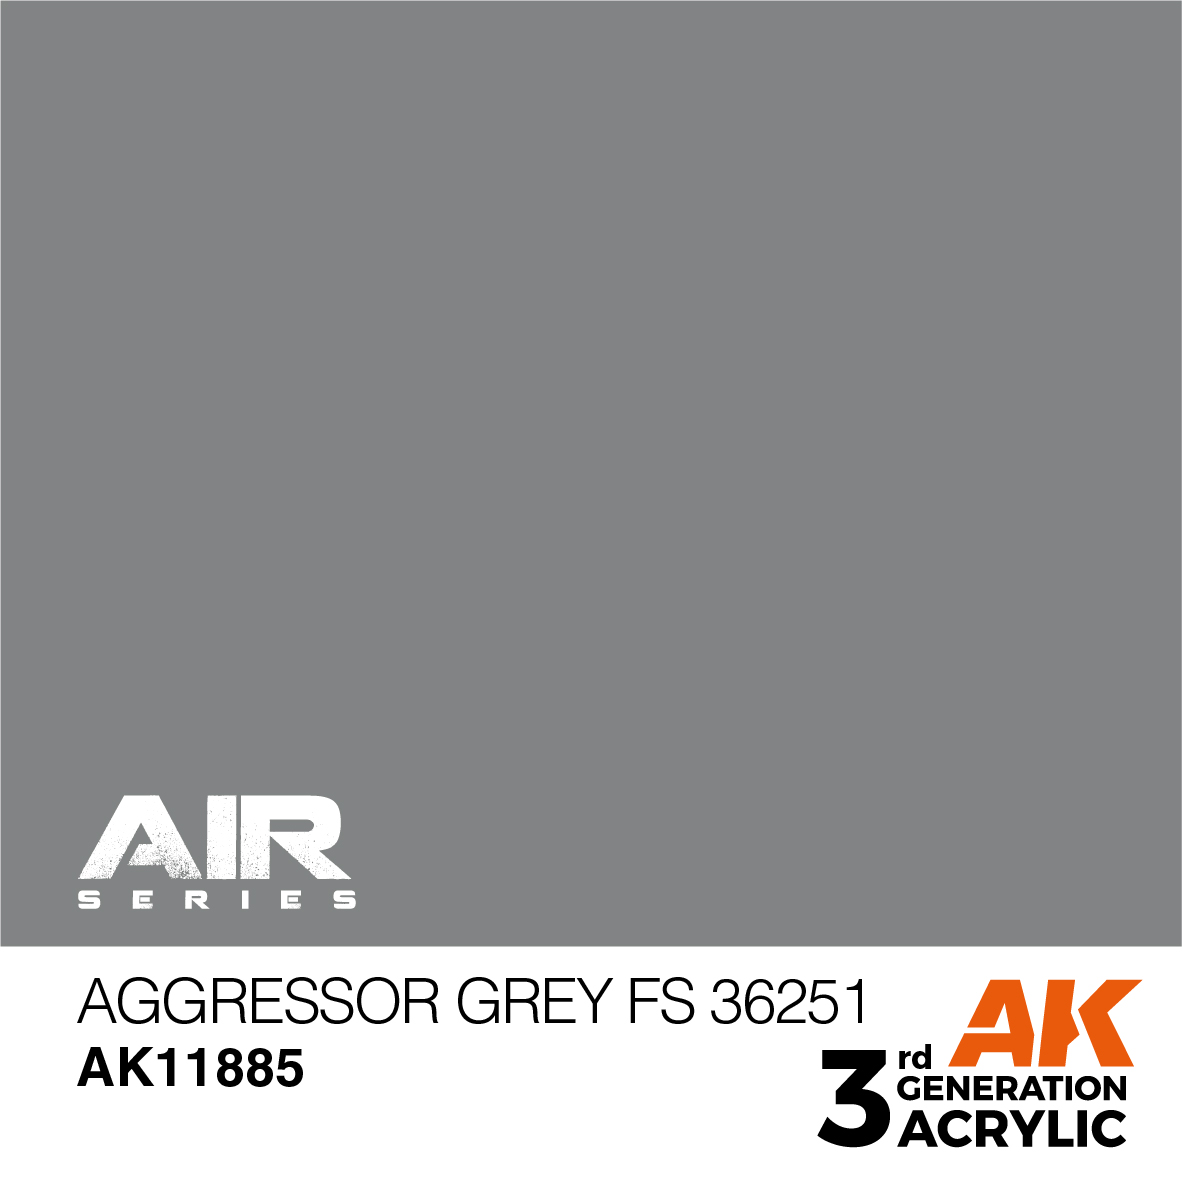 Aggressor Grey FS 36251 – AIR